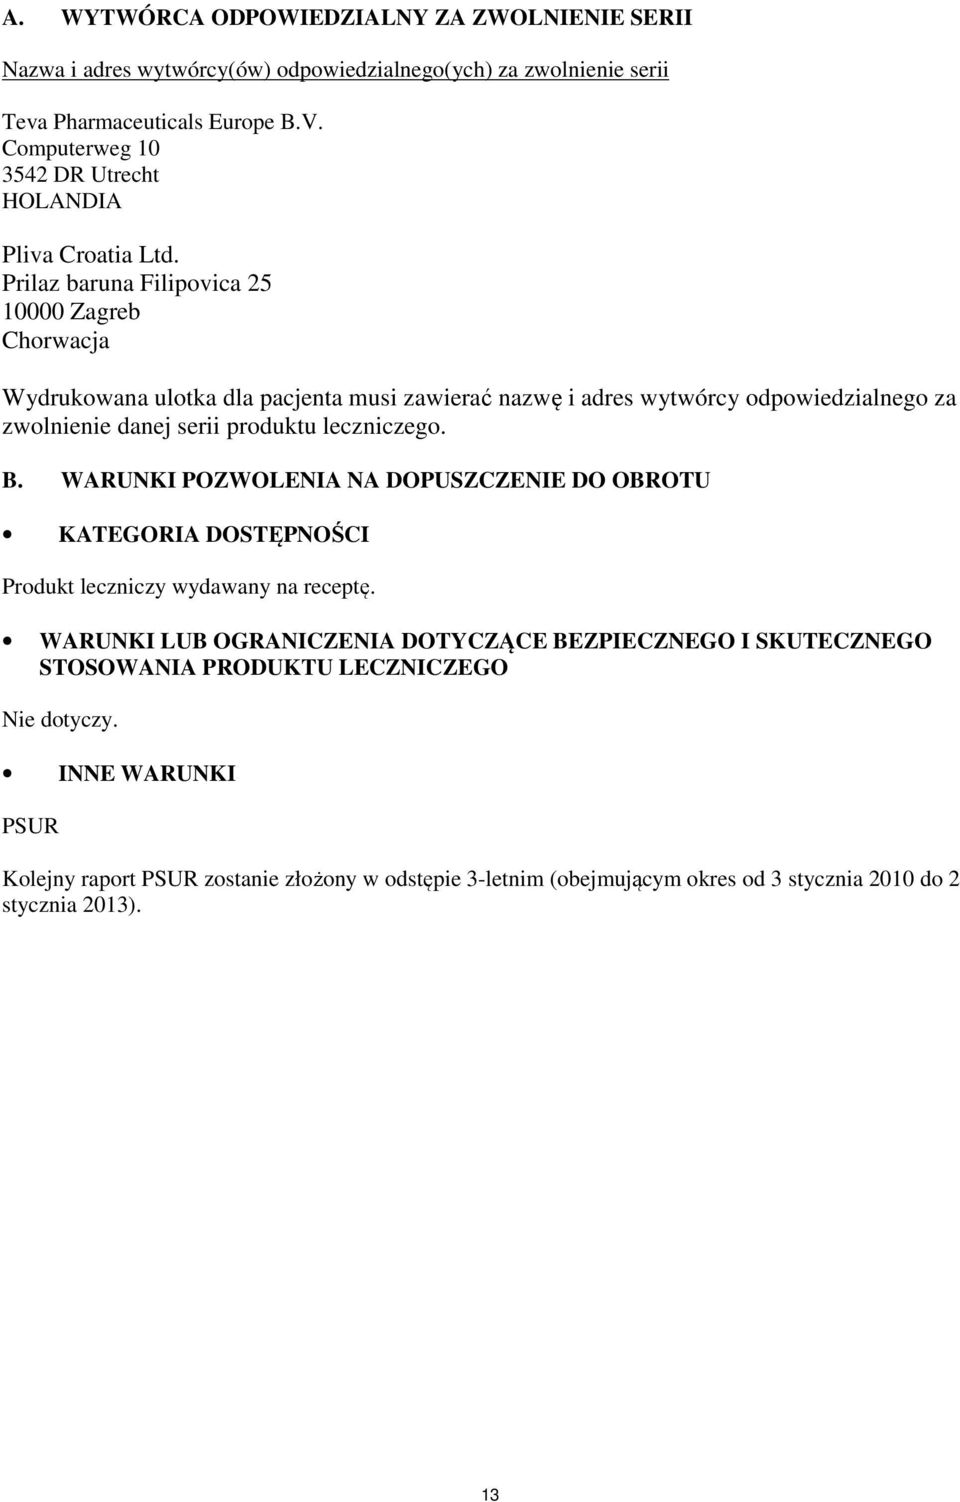 Prilaz baruna Filipovica 25 10000 Zagreb Chorwacja Wydrukowana ulotka dla pacjenta musi zawierać nazwę i adres wytwórcy odpowiedzialnego za zwolnienie danej serii produktu leczniczego. B.